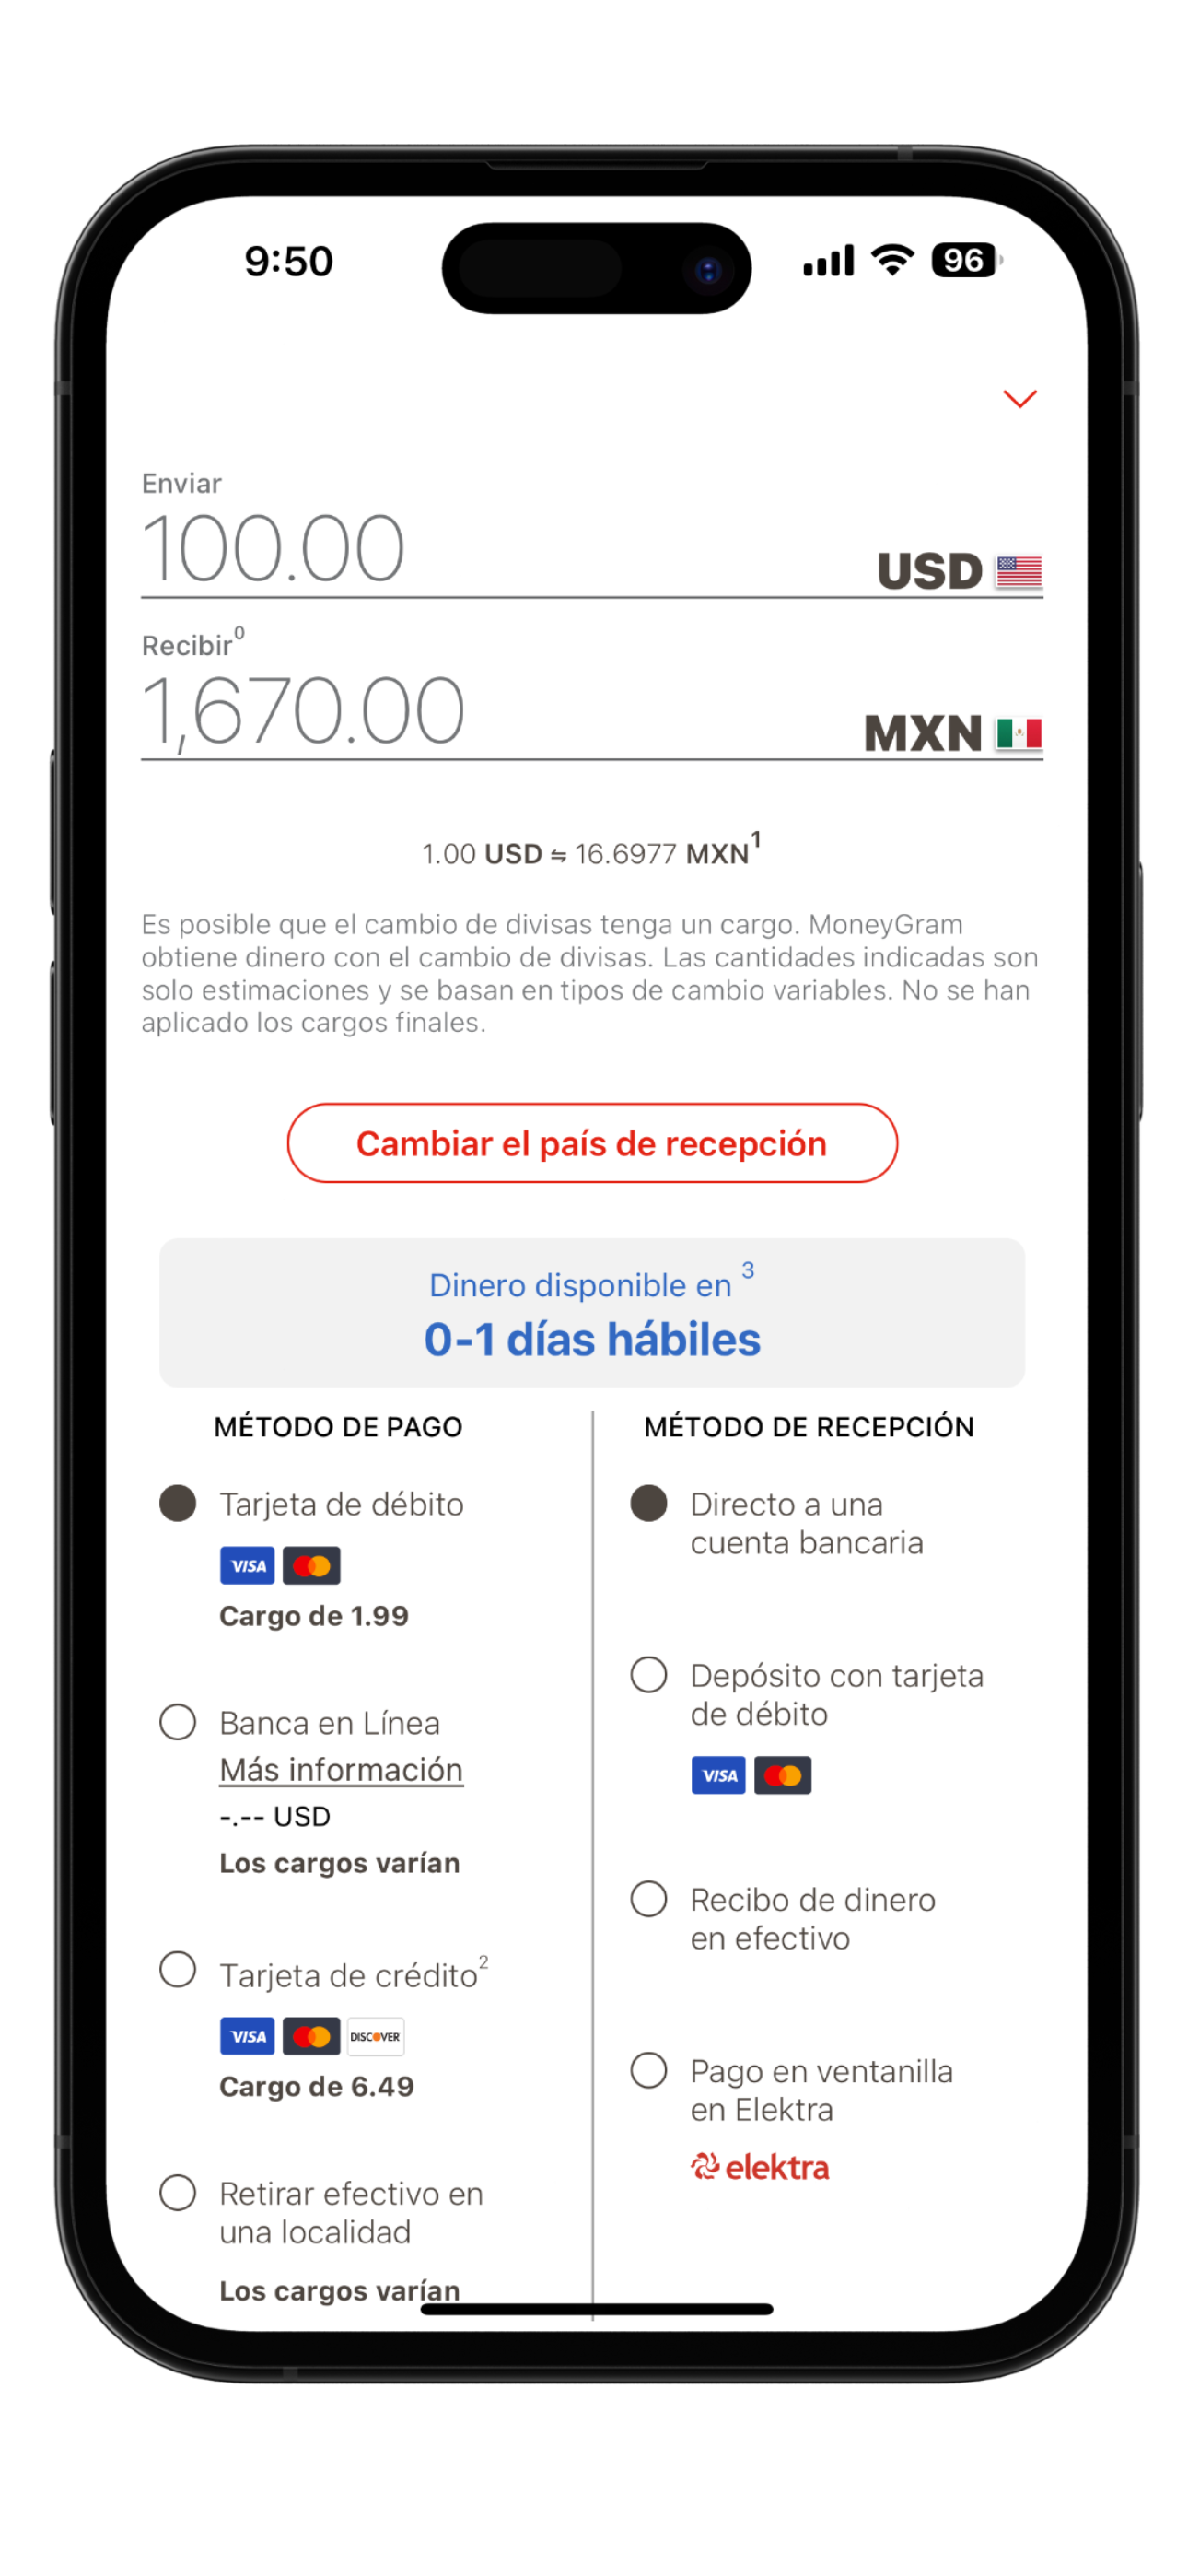 Pantalla de la aplicación MoneyGram Money Transfer para ingresar el monto y enviar